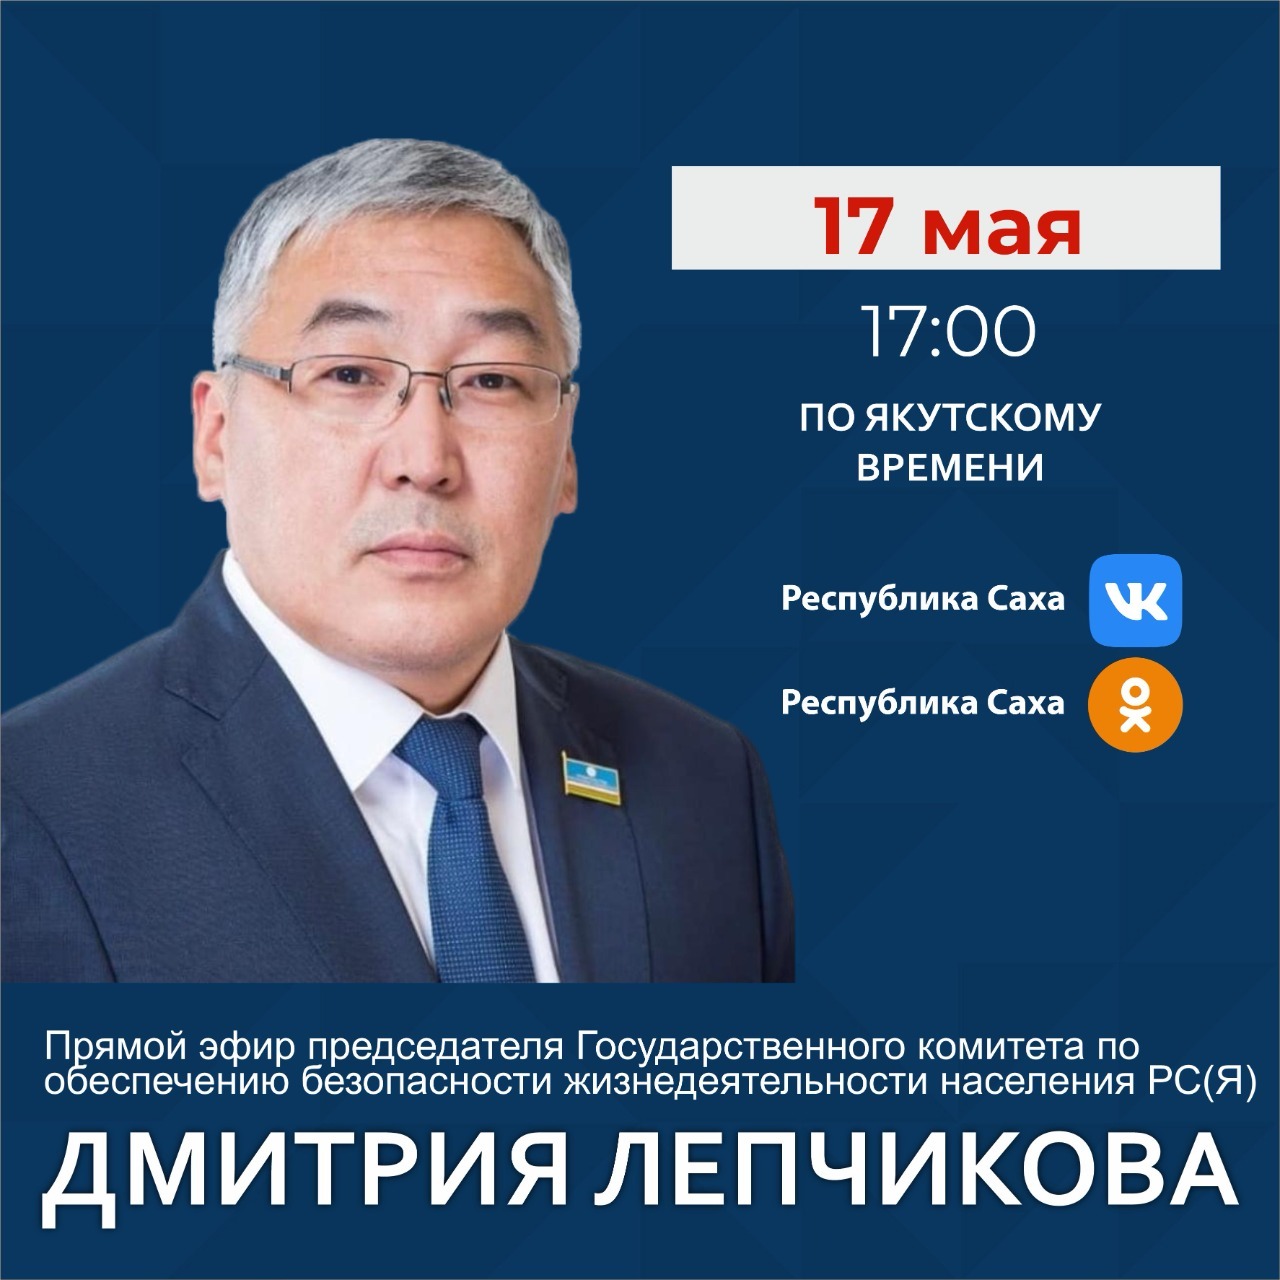 Председатель ГоскомОБЖ Якутии Дмитрий Лепчиков проведет прямой эфир в соцсетях 17 мая